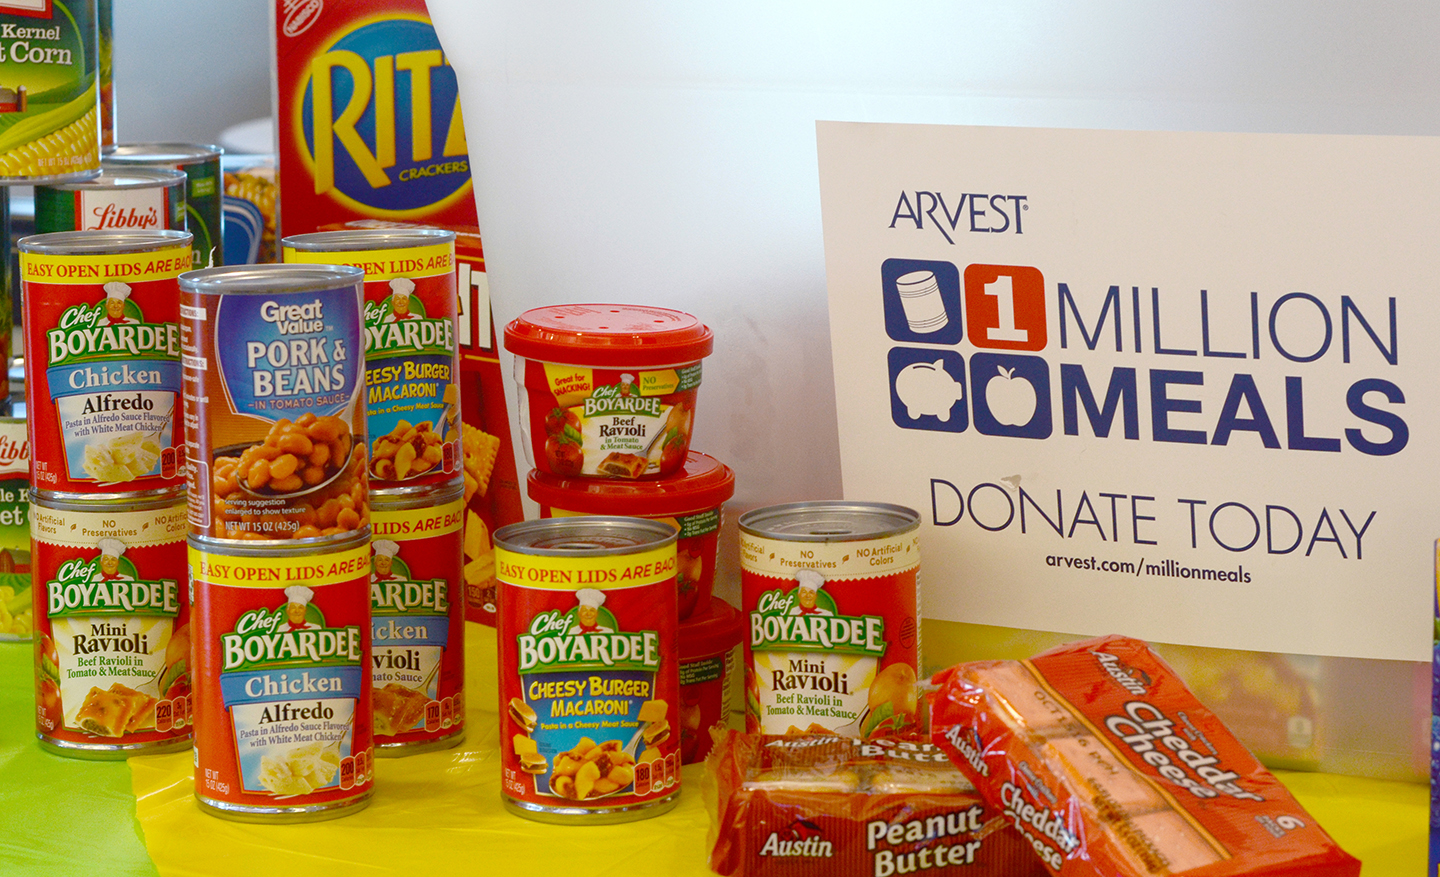 Arvest Bank’s 1 Million Meals campaign runs through June